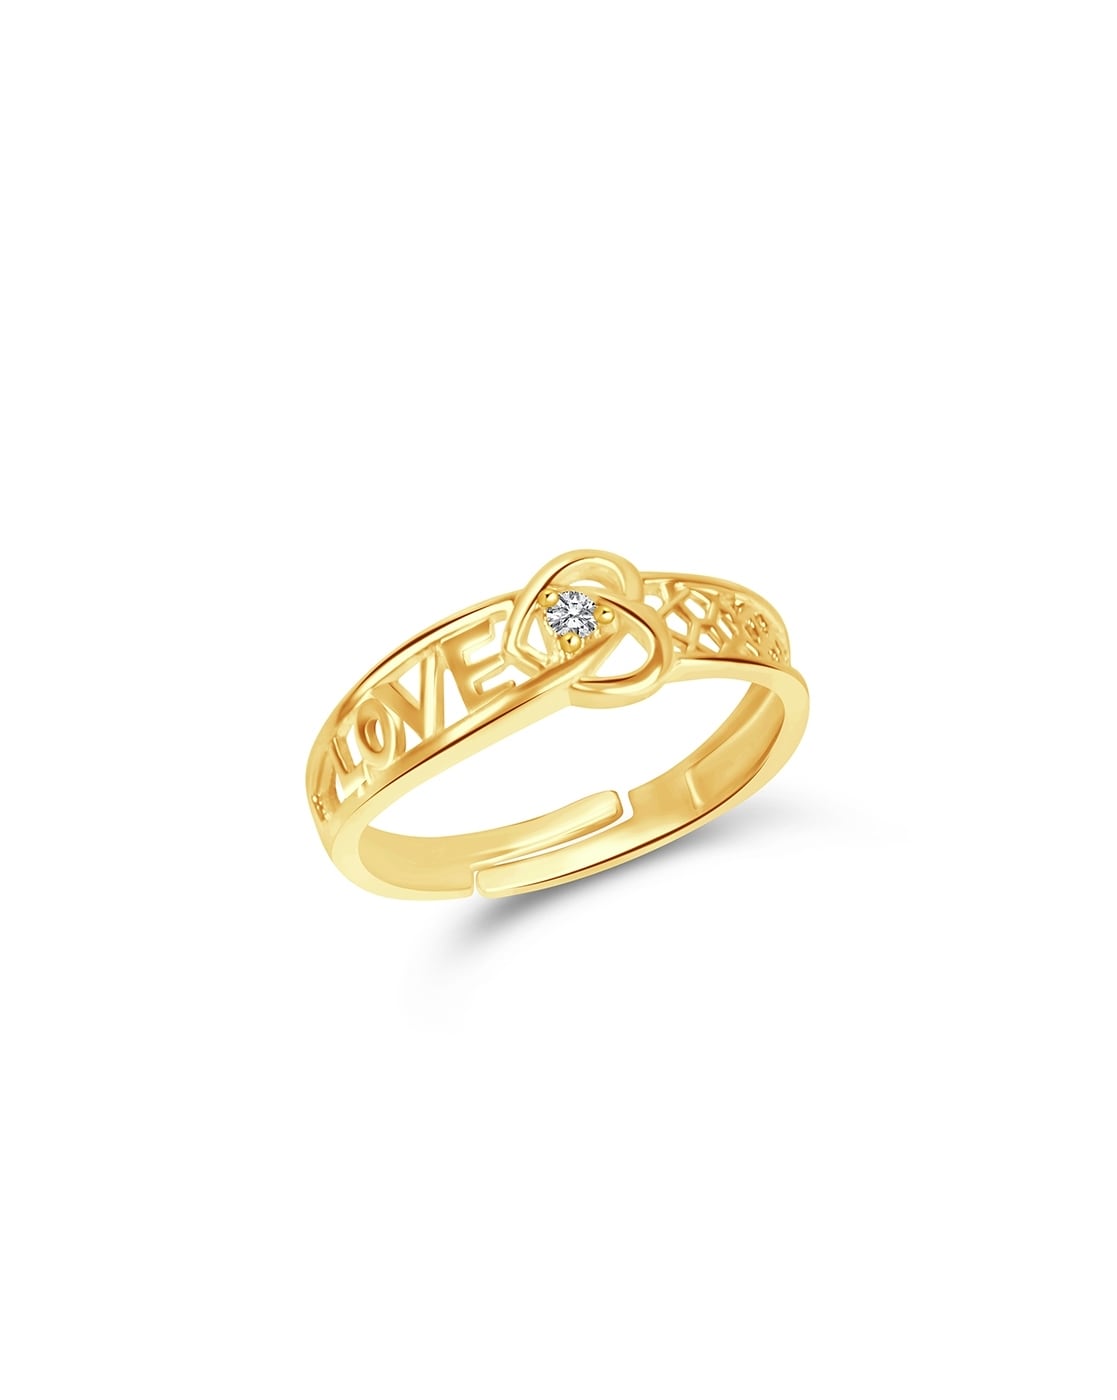 Price Love Ring - Buy Price Love Ring online in India